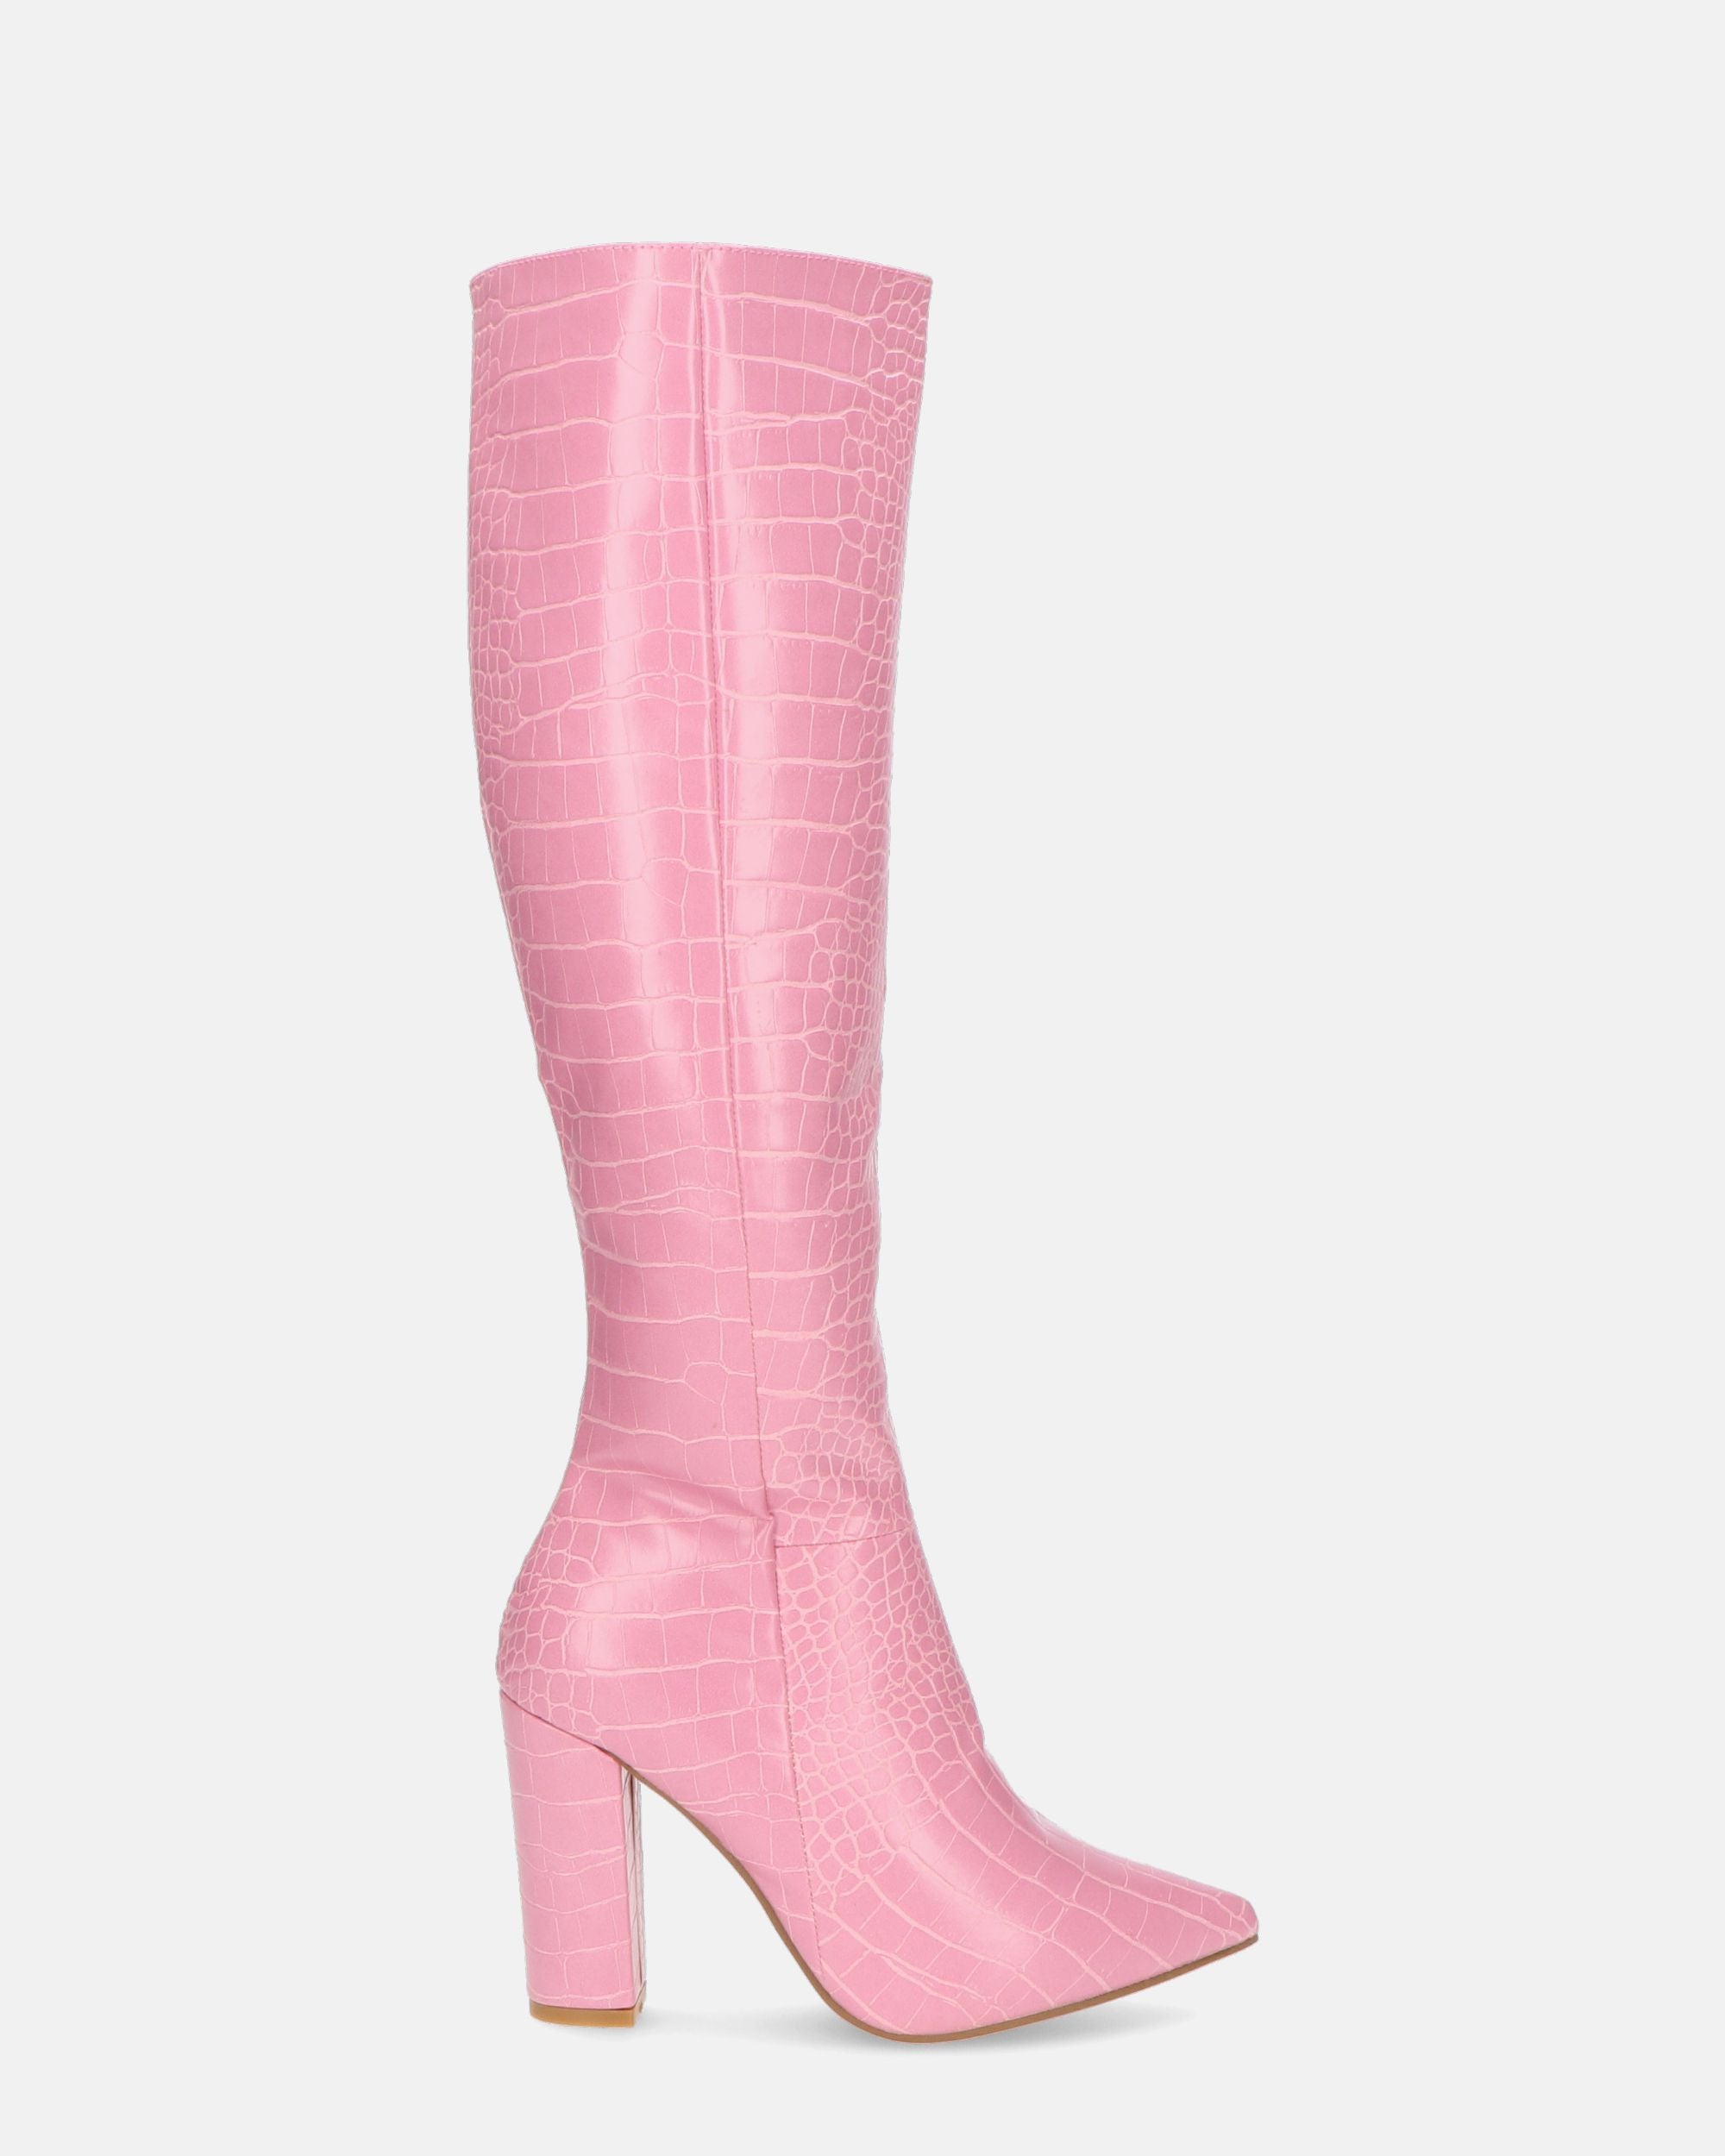 KSENIA - stivali alti con tacco in rosa pitonato